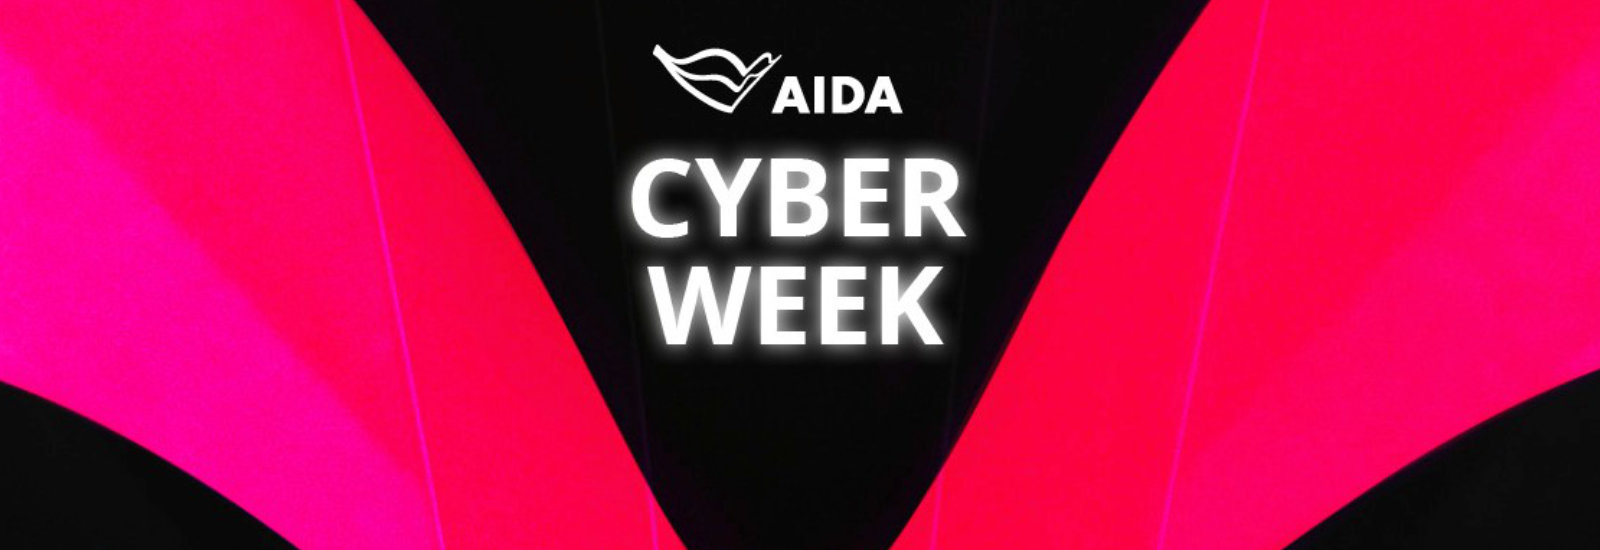 AIDA Cyber Week